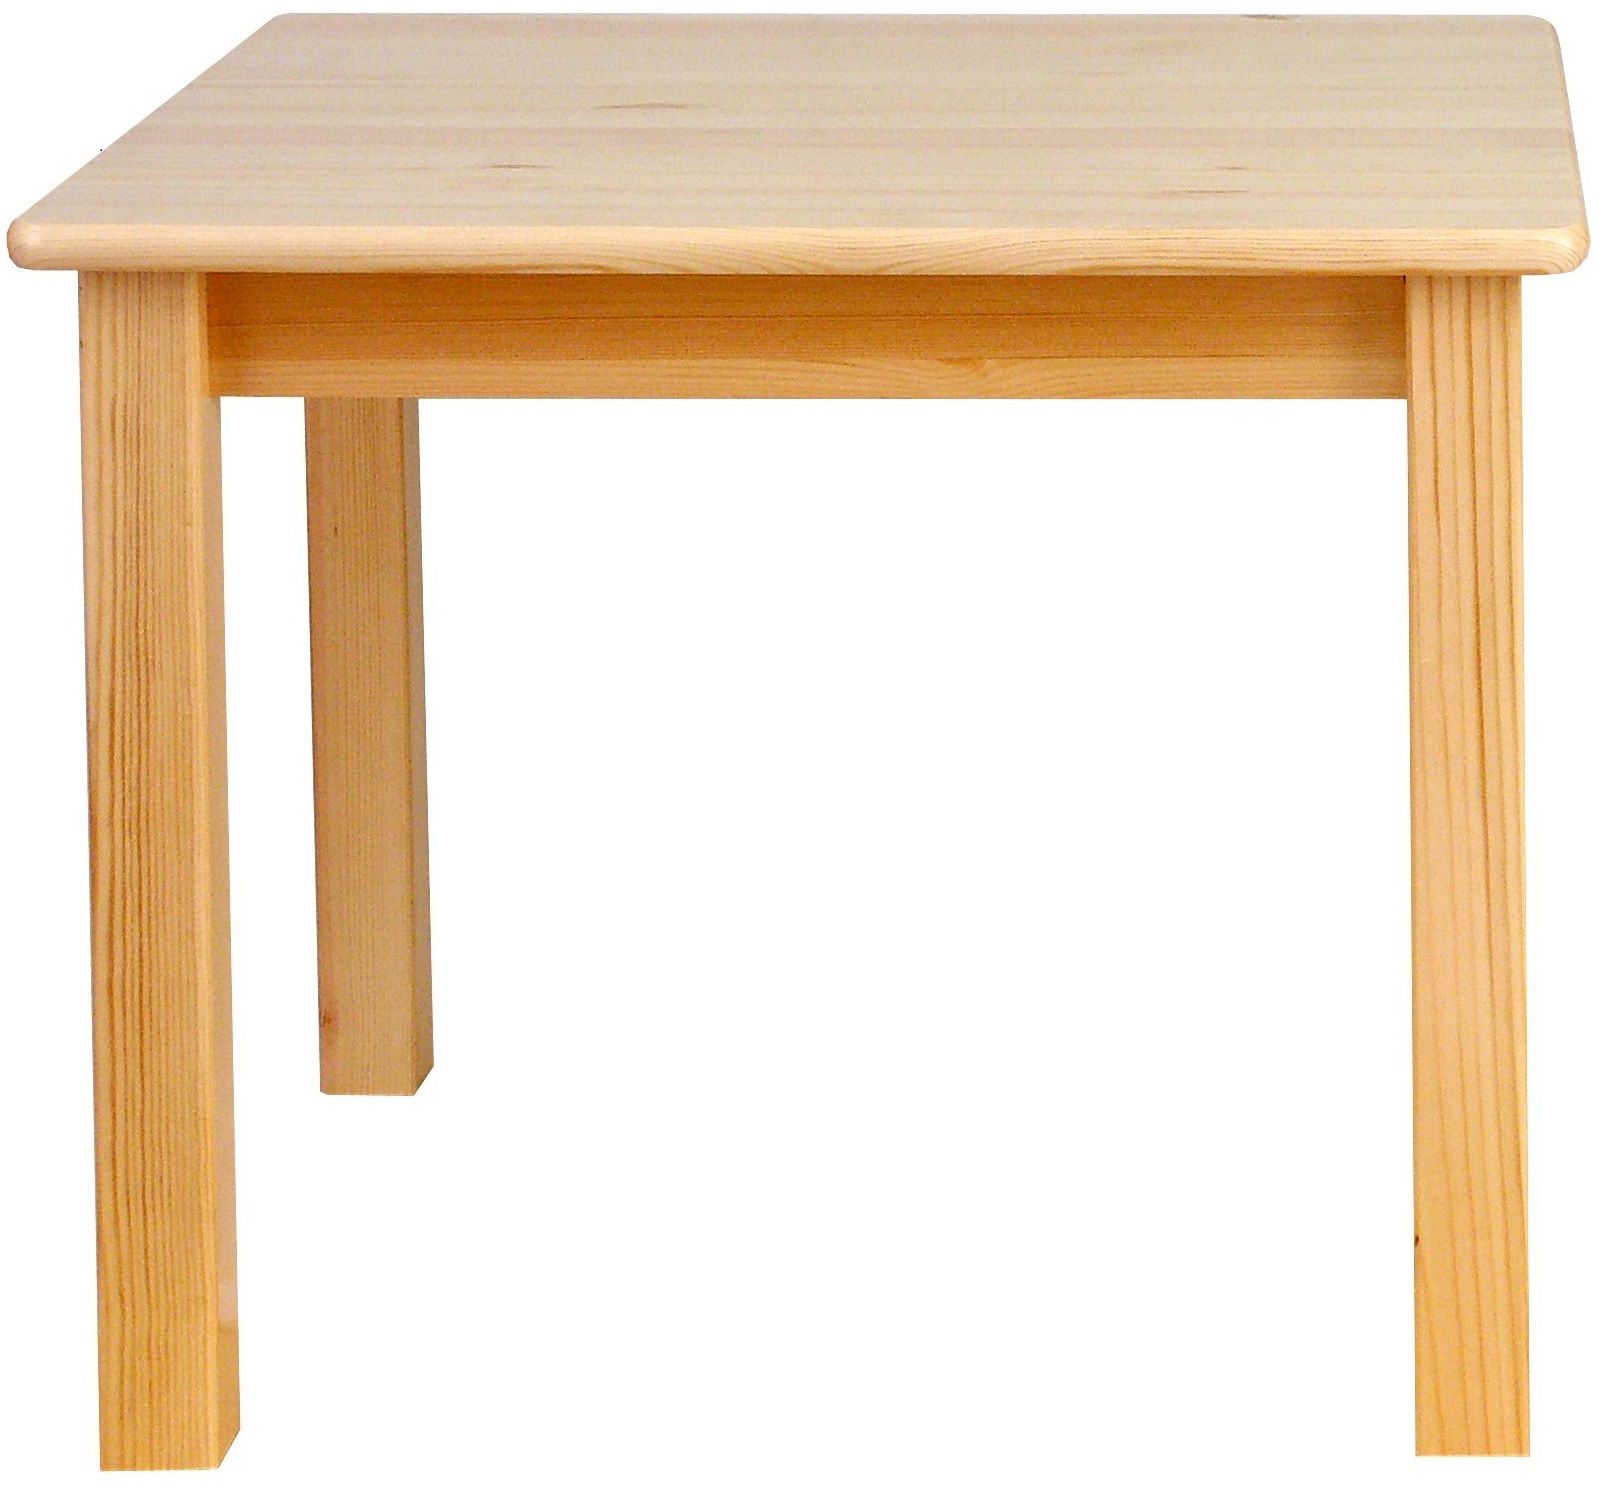 Стол деревянный квадратный, сосна (70х70 см, h 52 см - 2 рост)